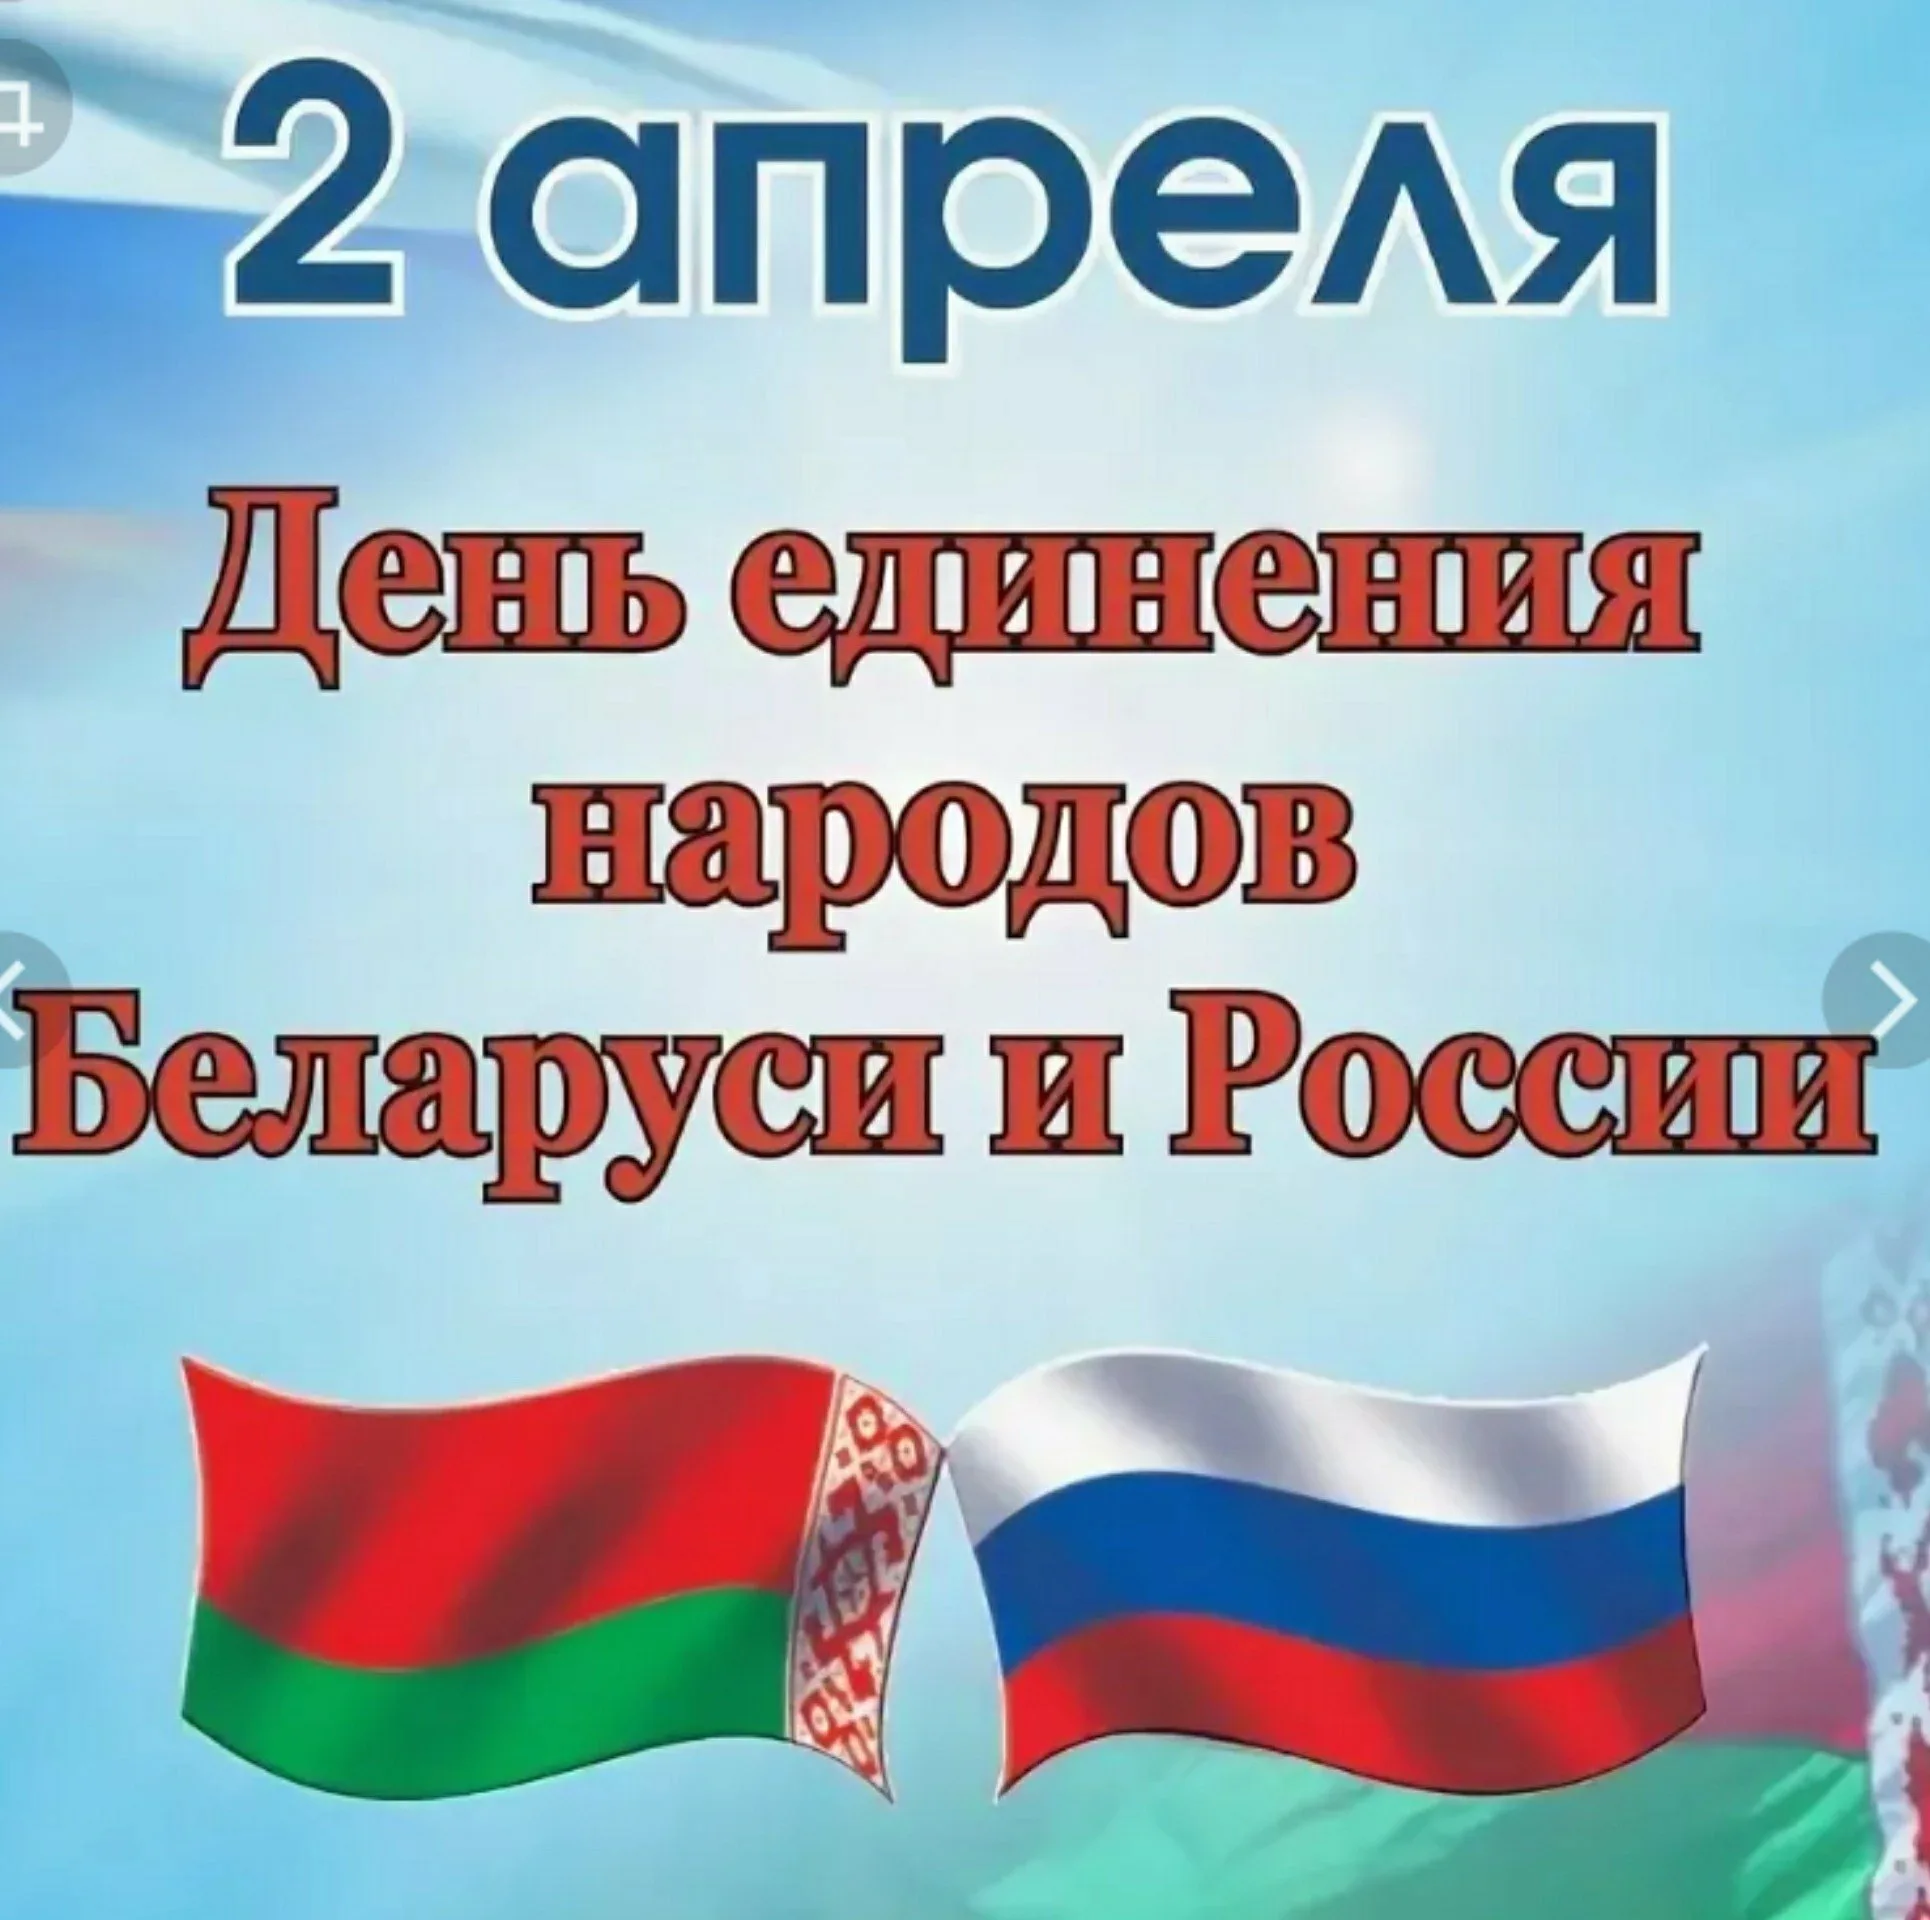 День Единения Беларуси и России